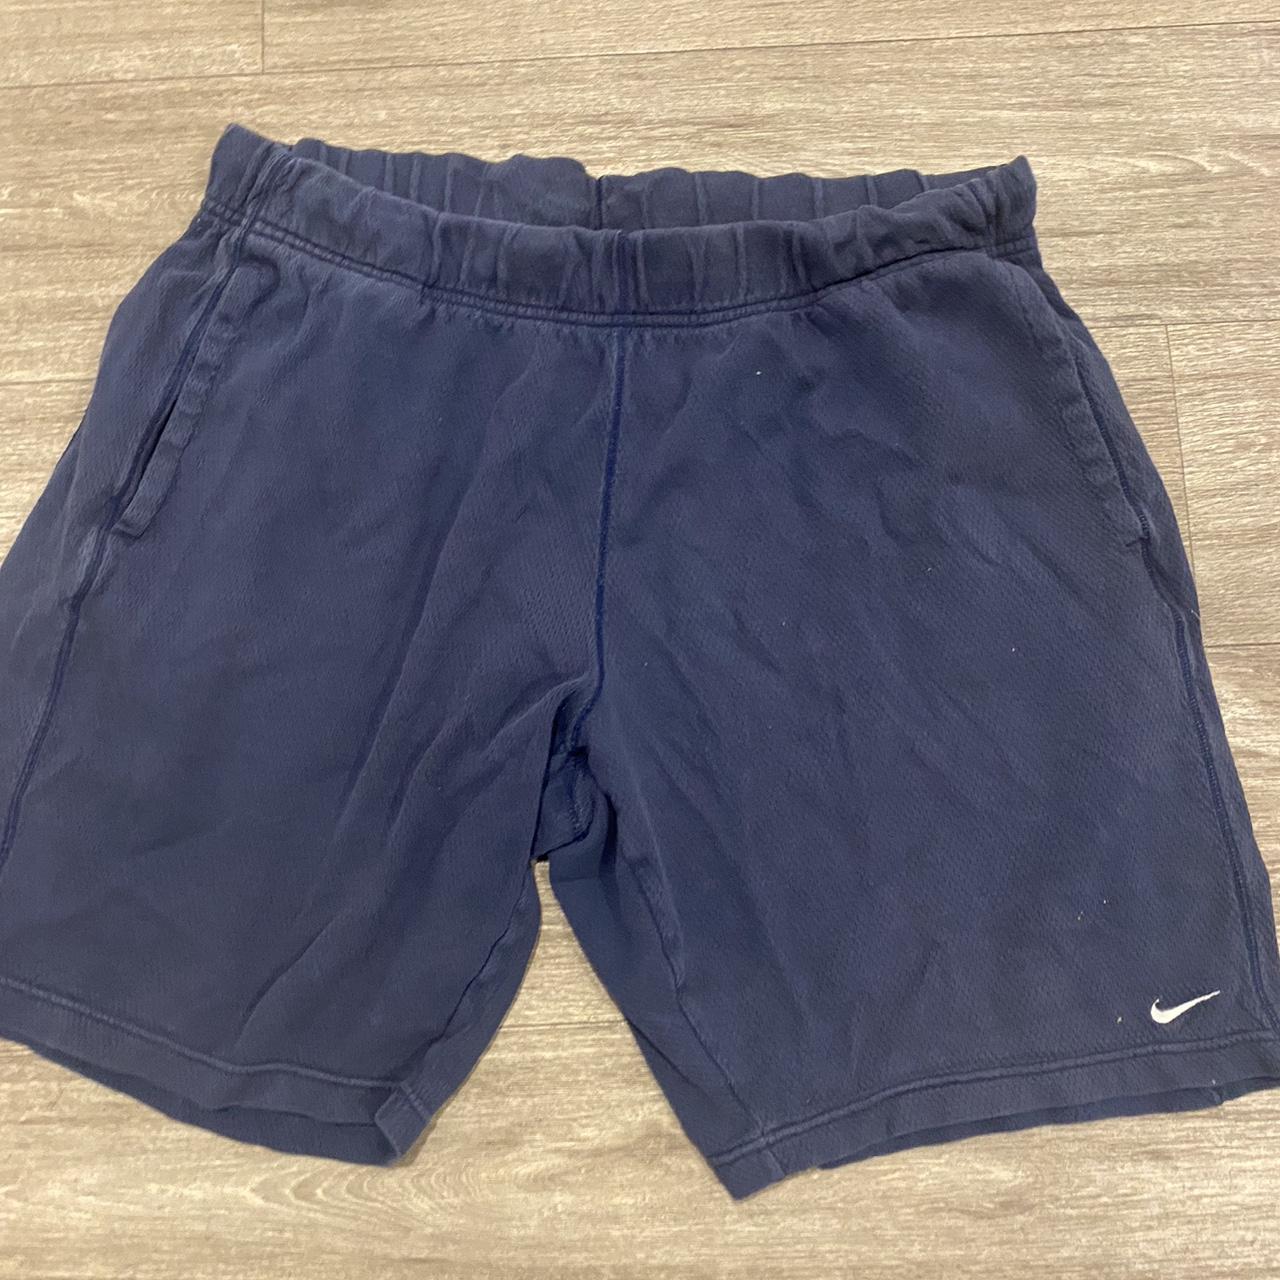 Vintage Nike shorts -size large -navy blue -message... - Depop